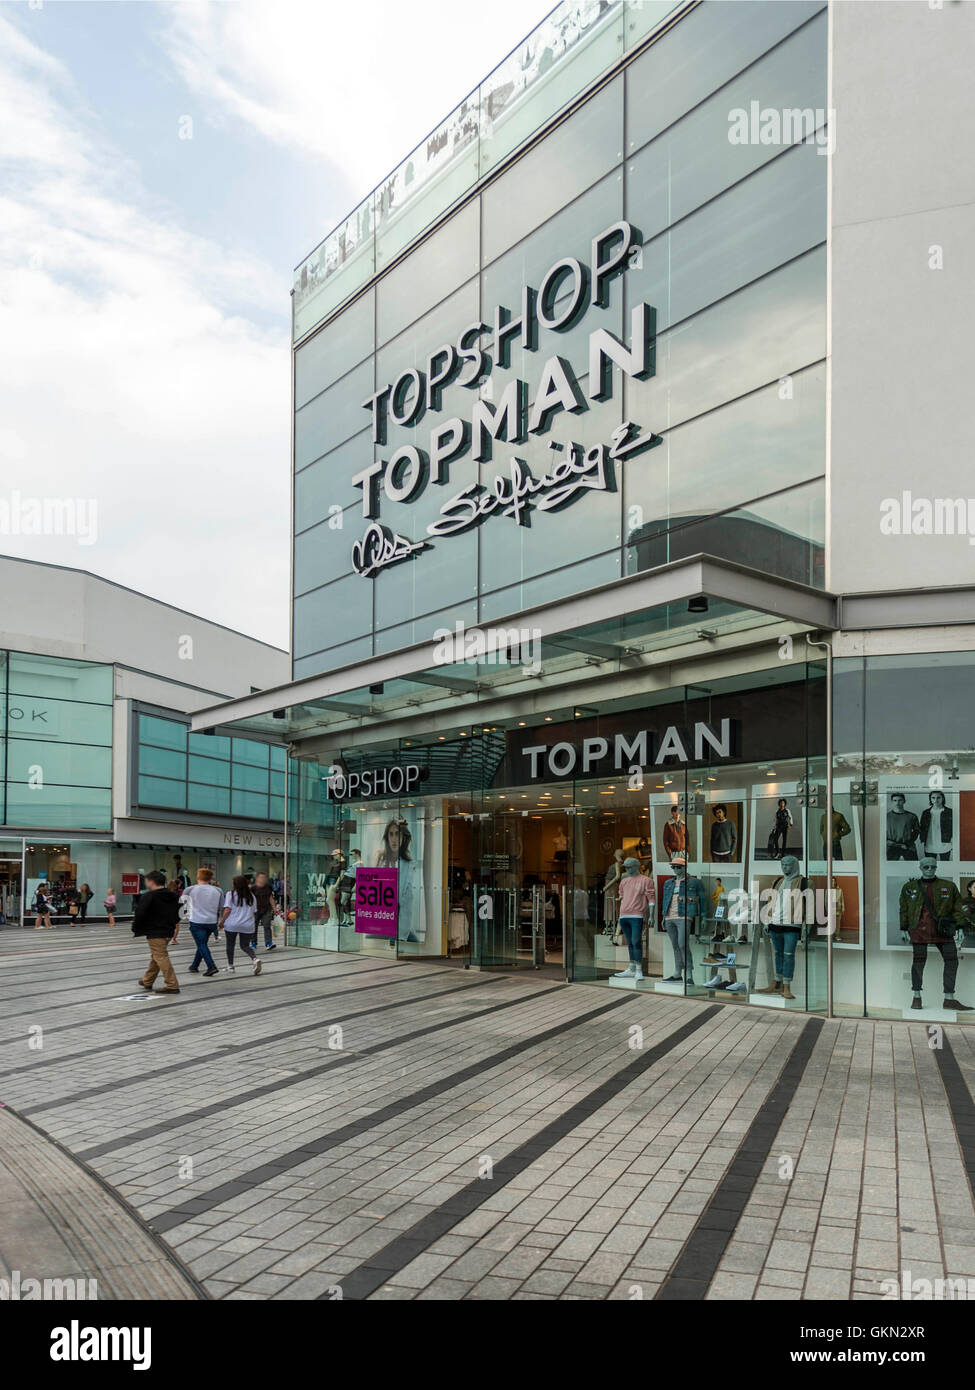 Topman shop Banque de photographies et d'images à haute résolution - Alamy